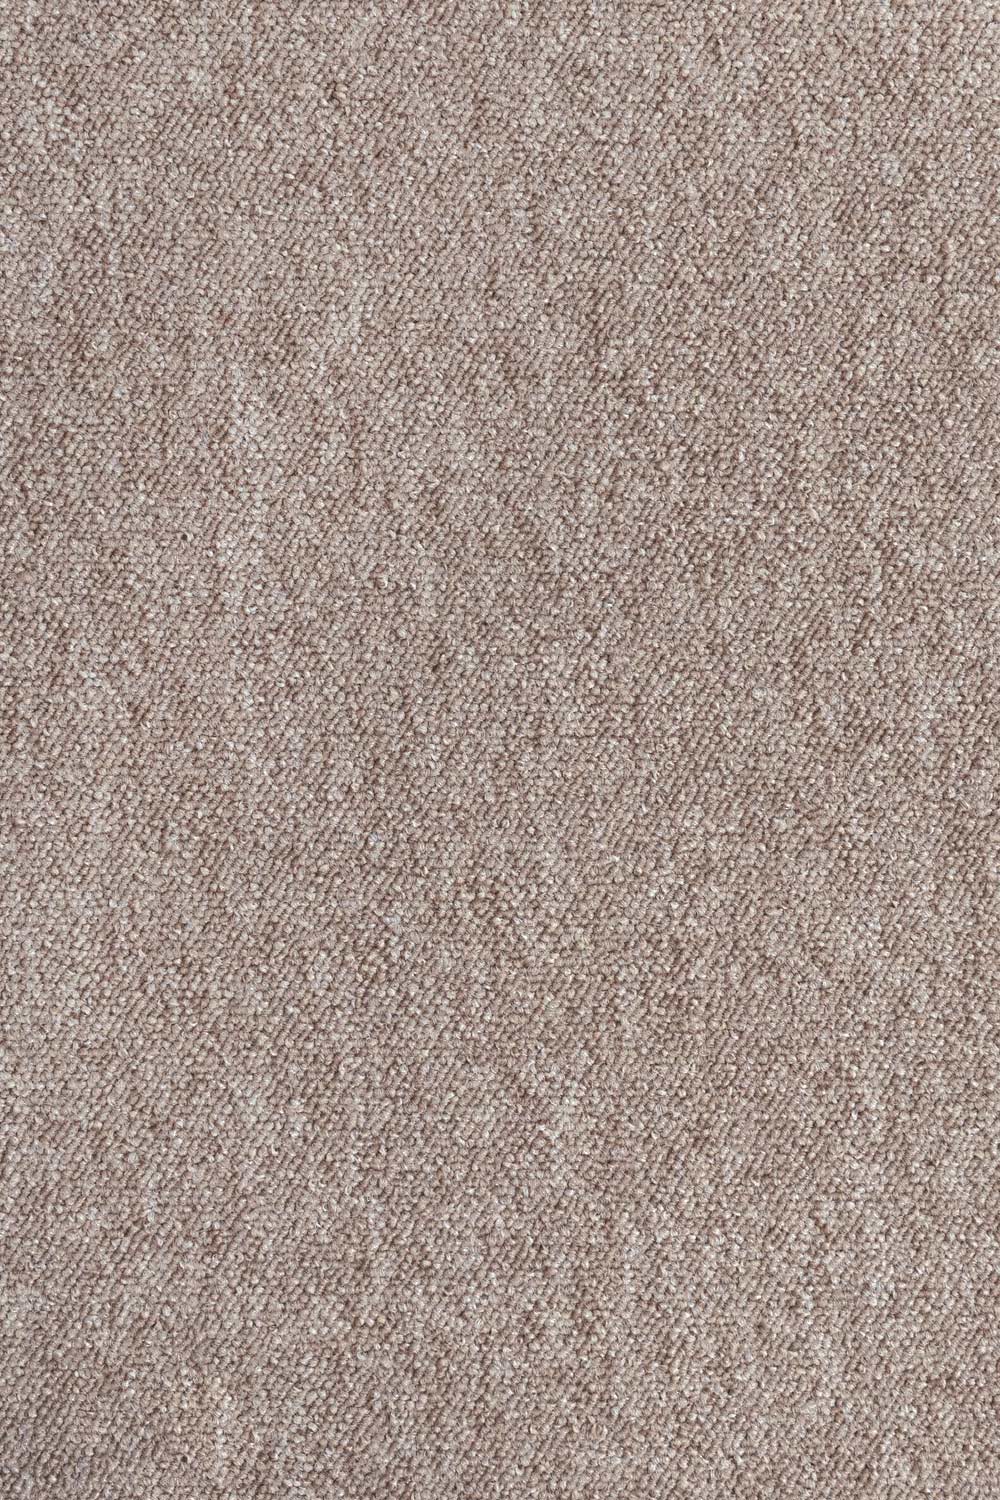 Metrážny koberec Lyon Solid 70 400 cm